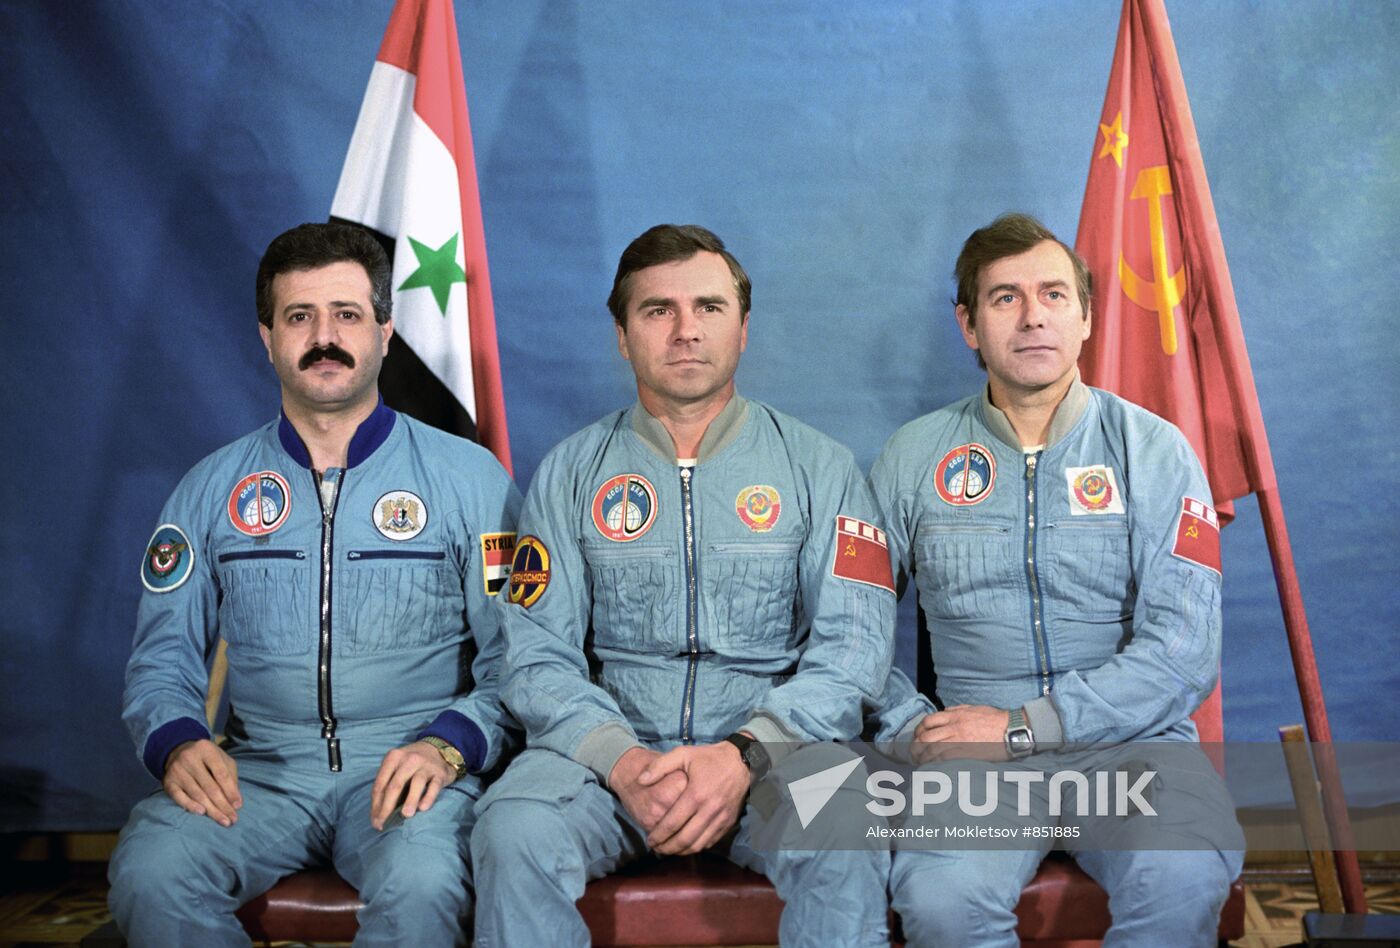 Soyuz TM-3 spaceship crew